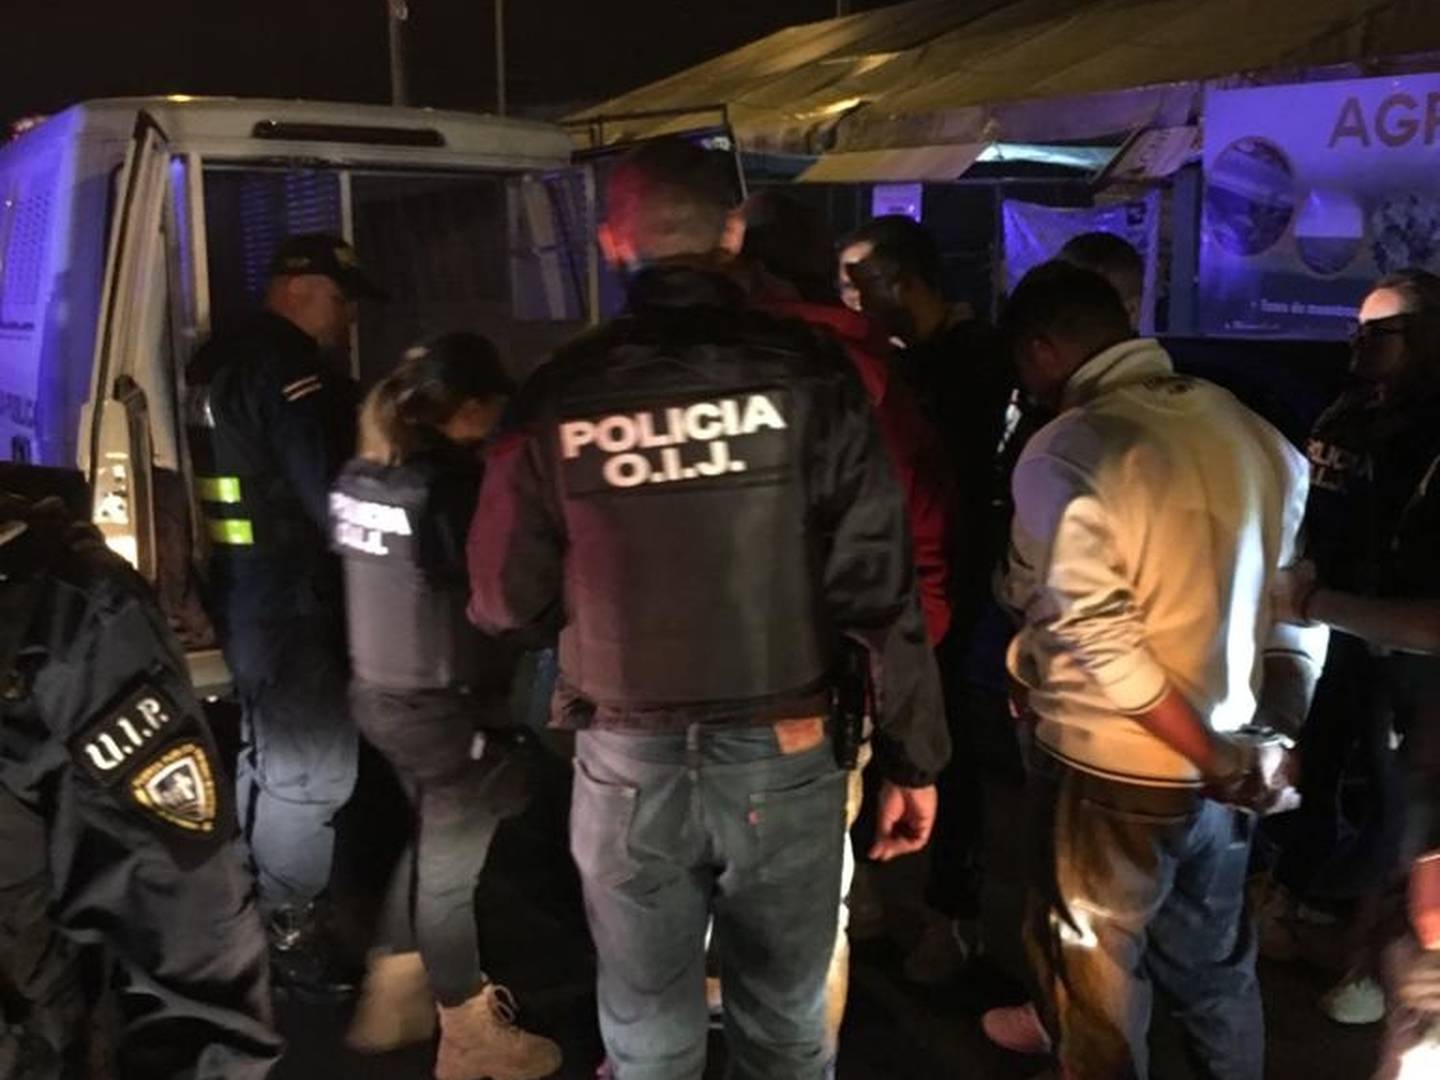 OIJ detiene a 8 hombres y una mujer por agredir a tráfico en Coronado. Foto OIJ